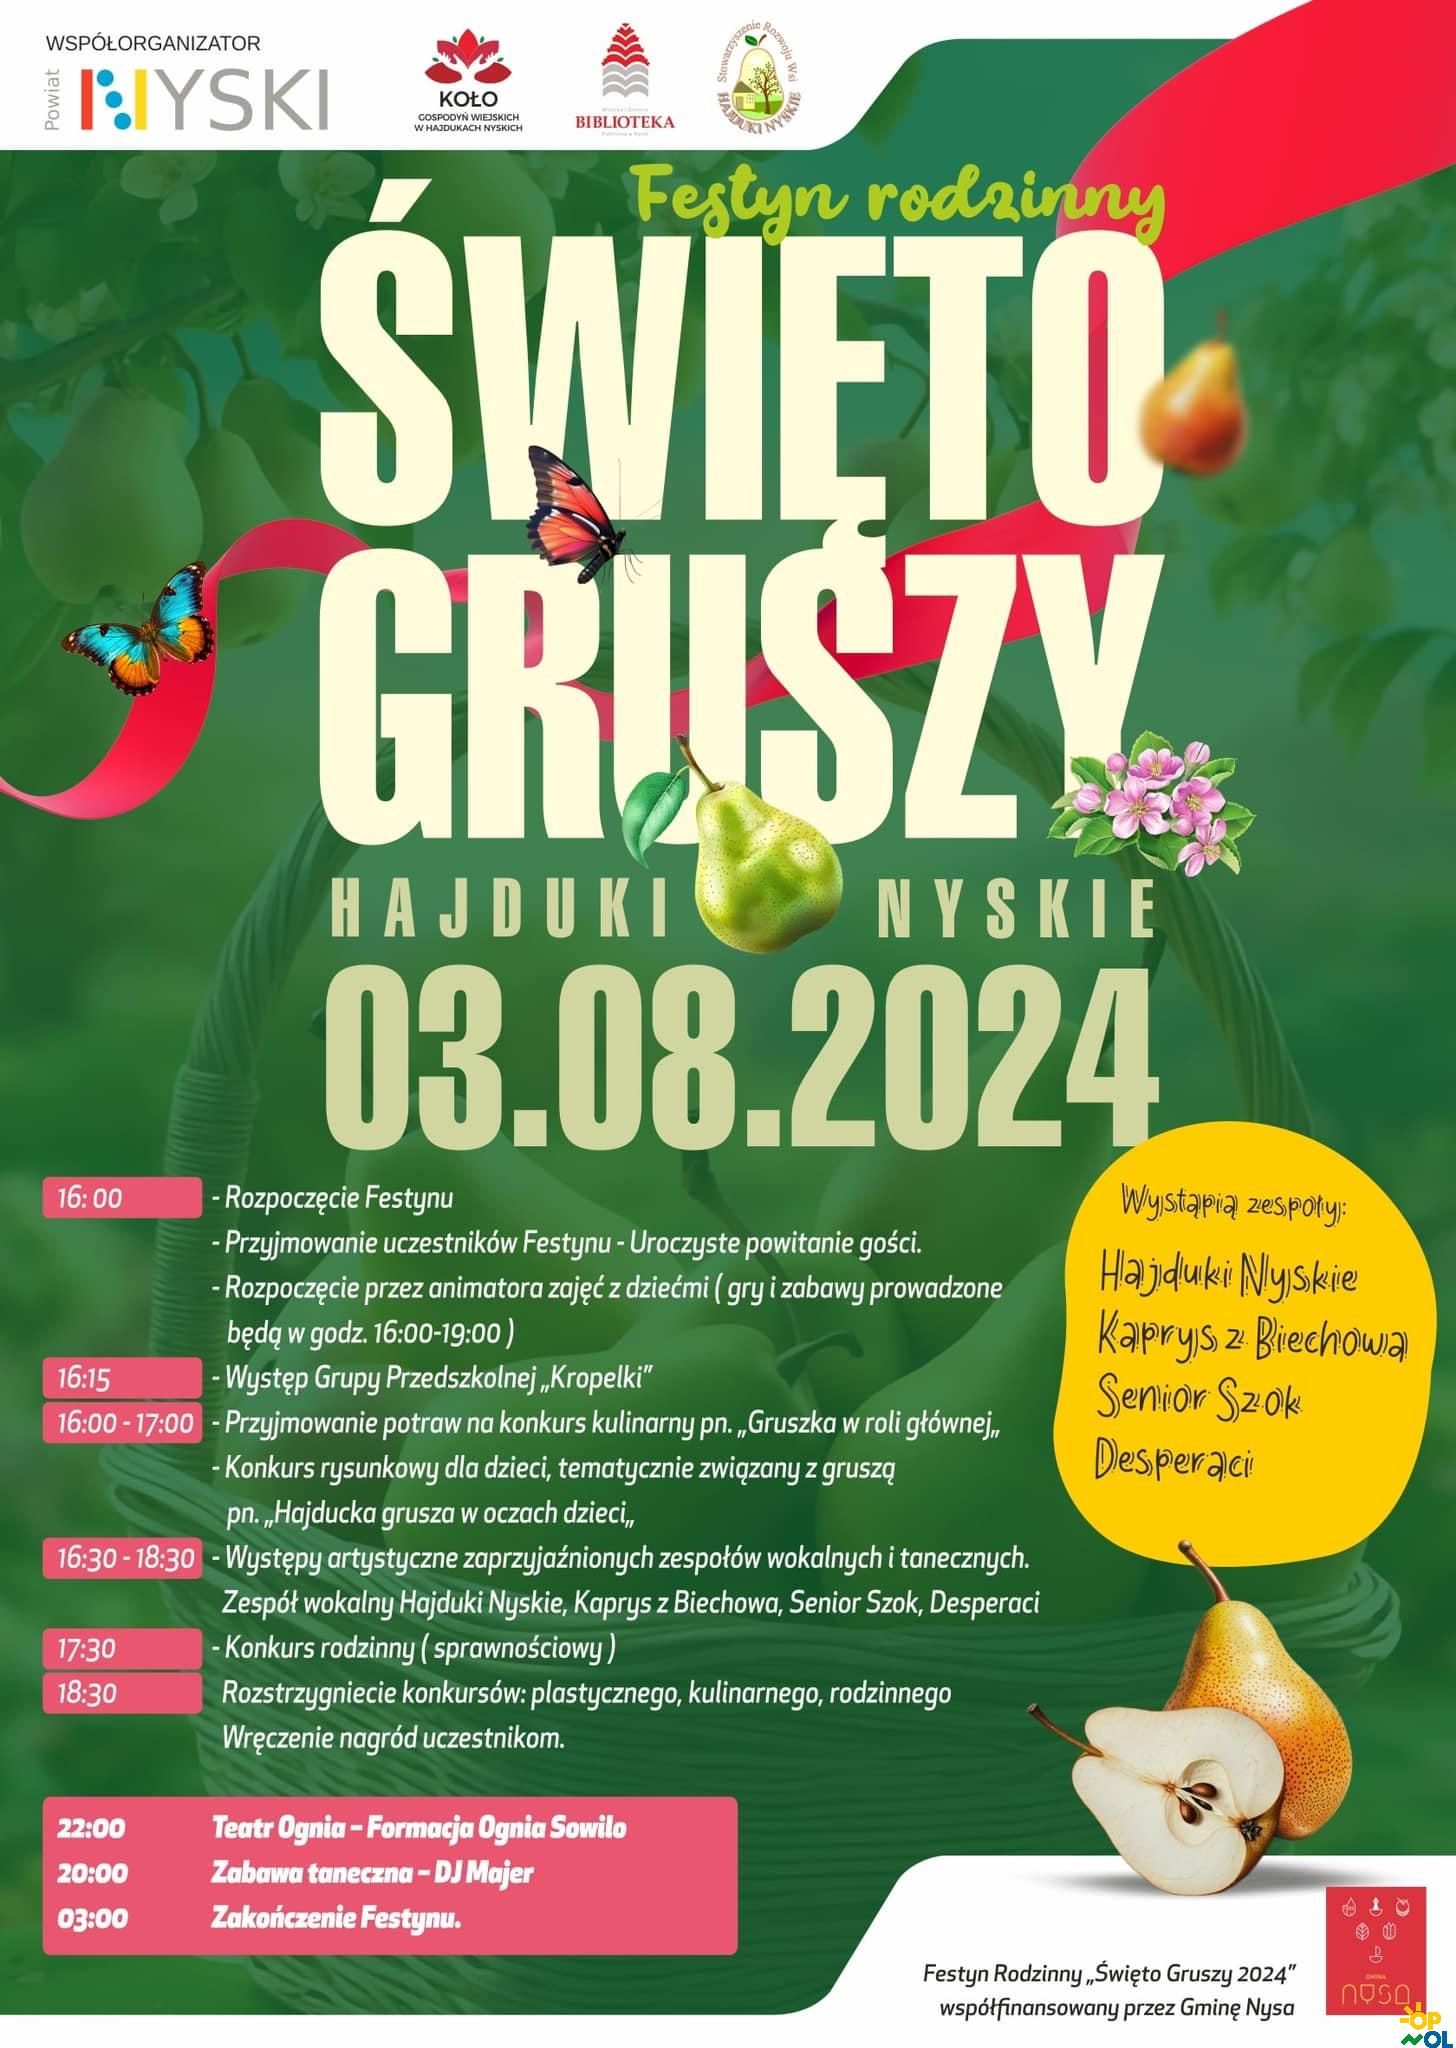 Święto Gruszy Hajduki Nyskie - Festyn Rodzinny / Hruškový festival Hajduki Nyskie - Rodinný festival